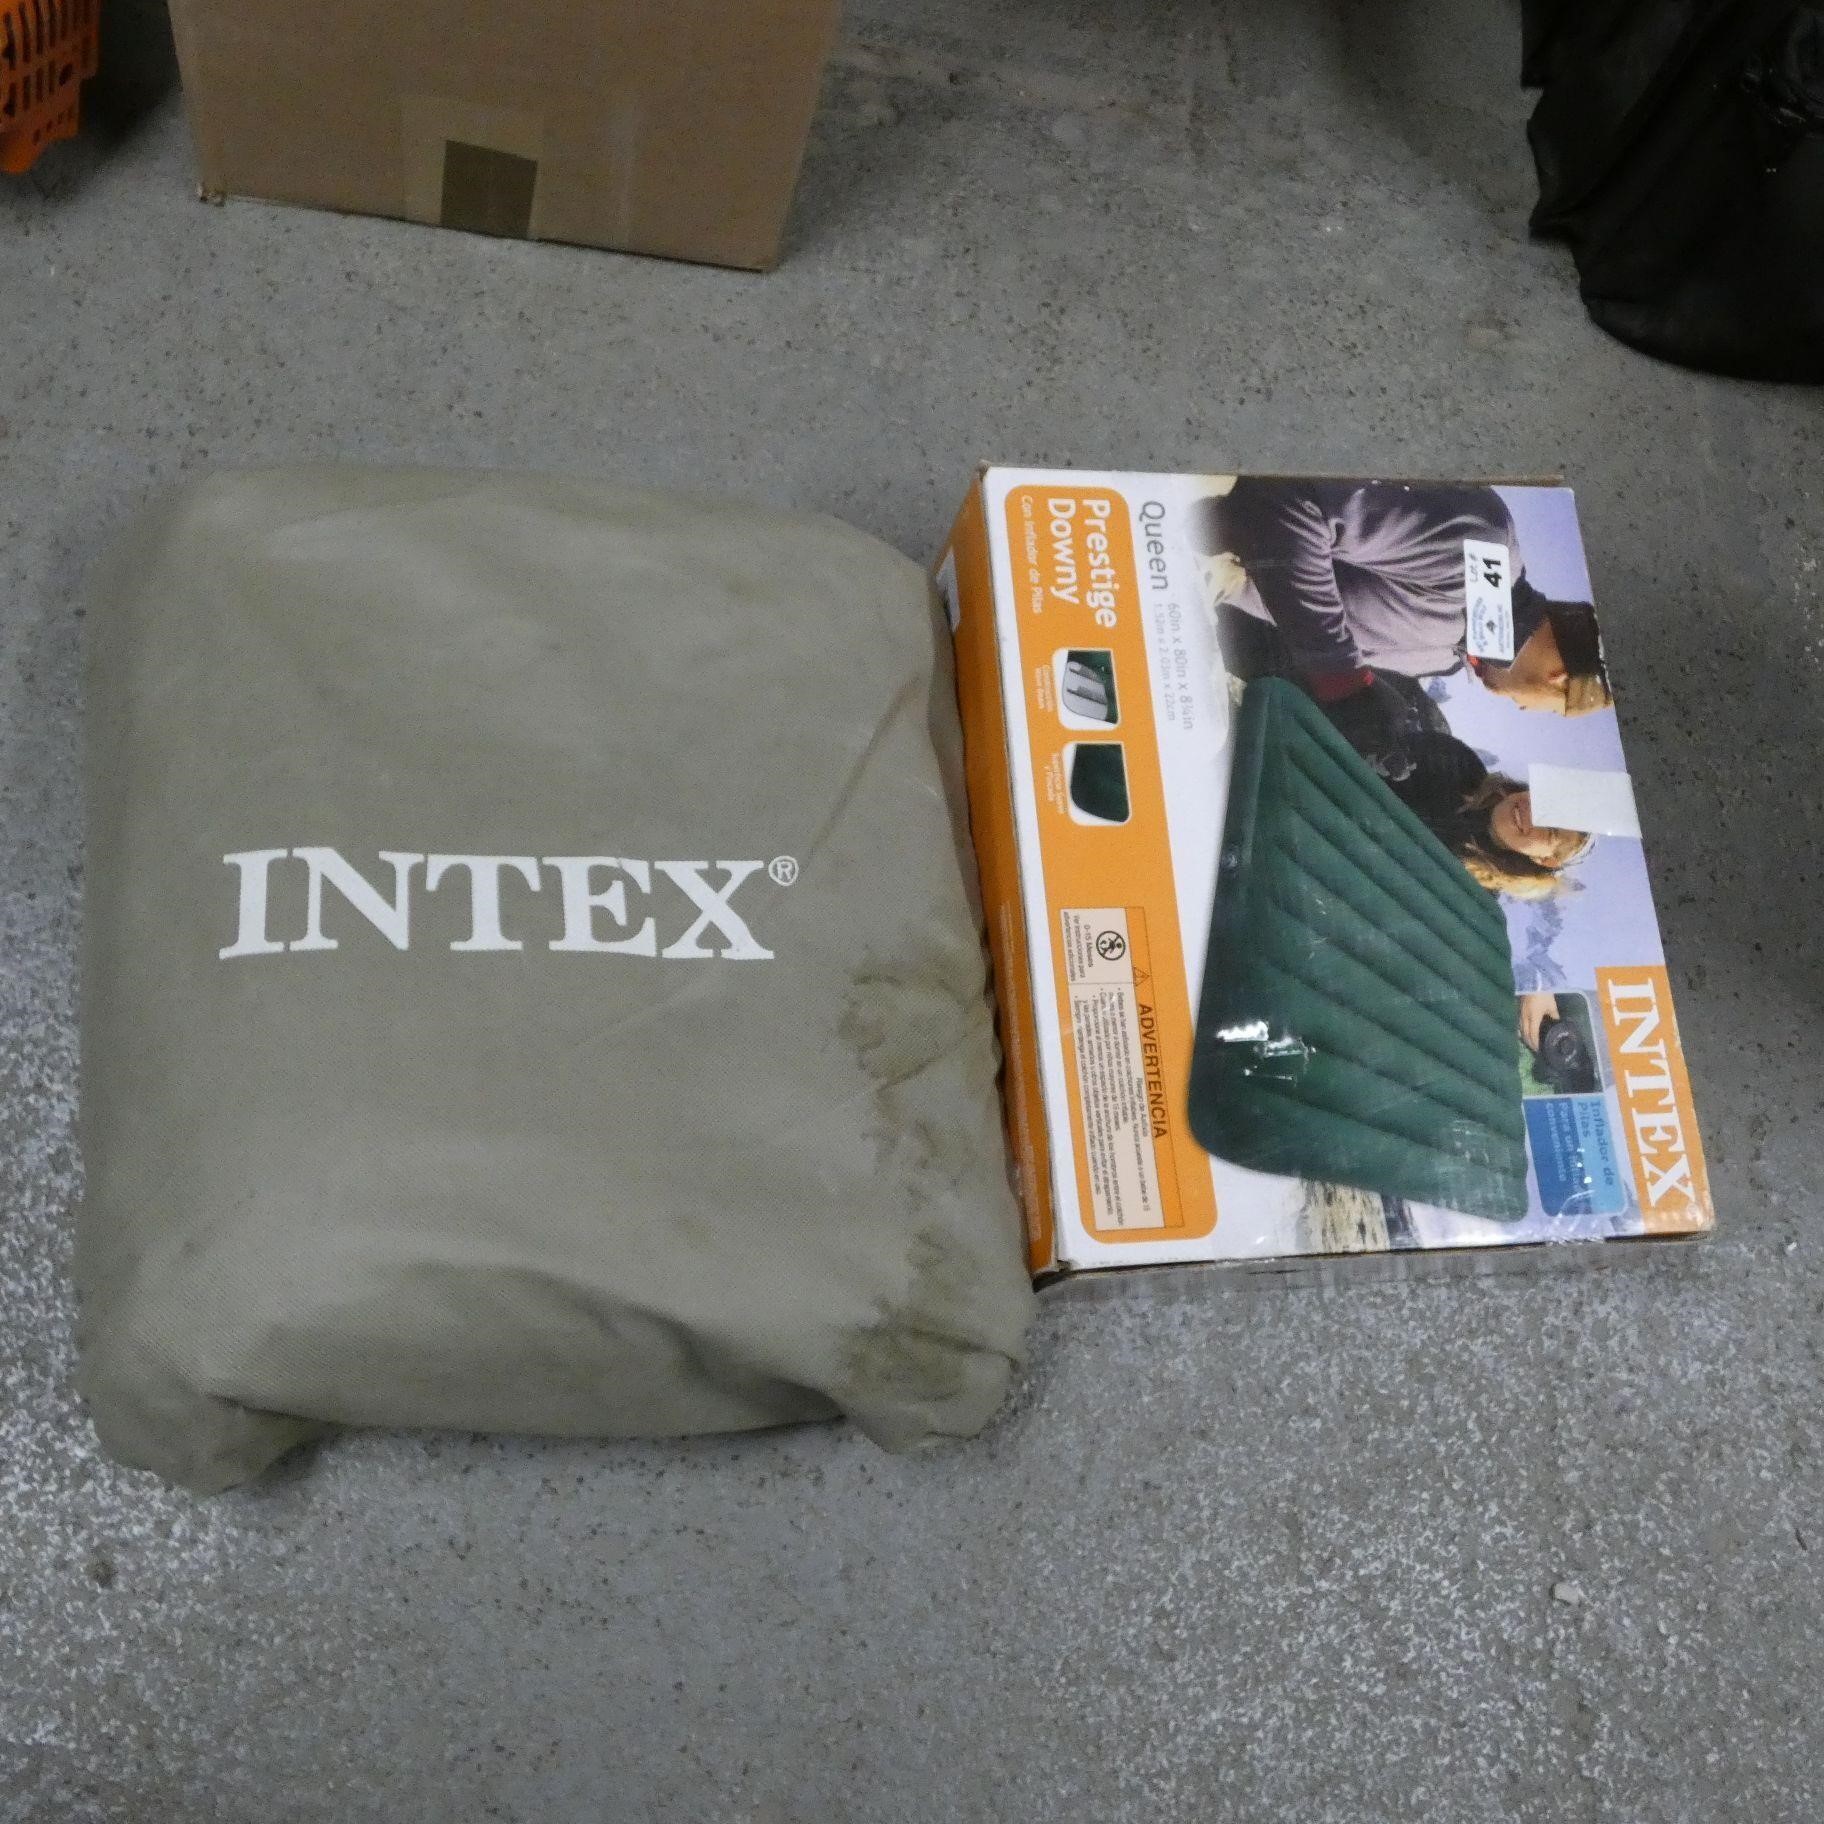 Intex Queen Size Air Mattress & Other